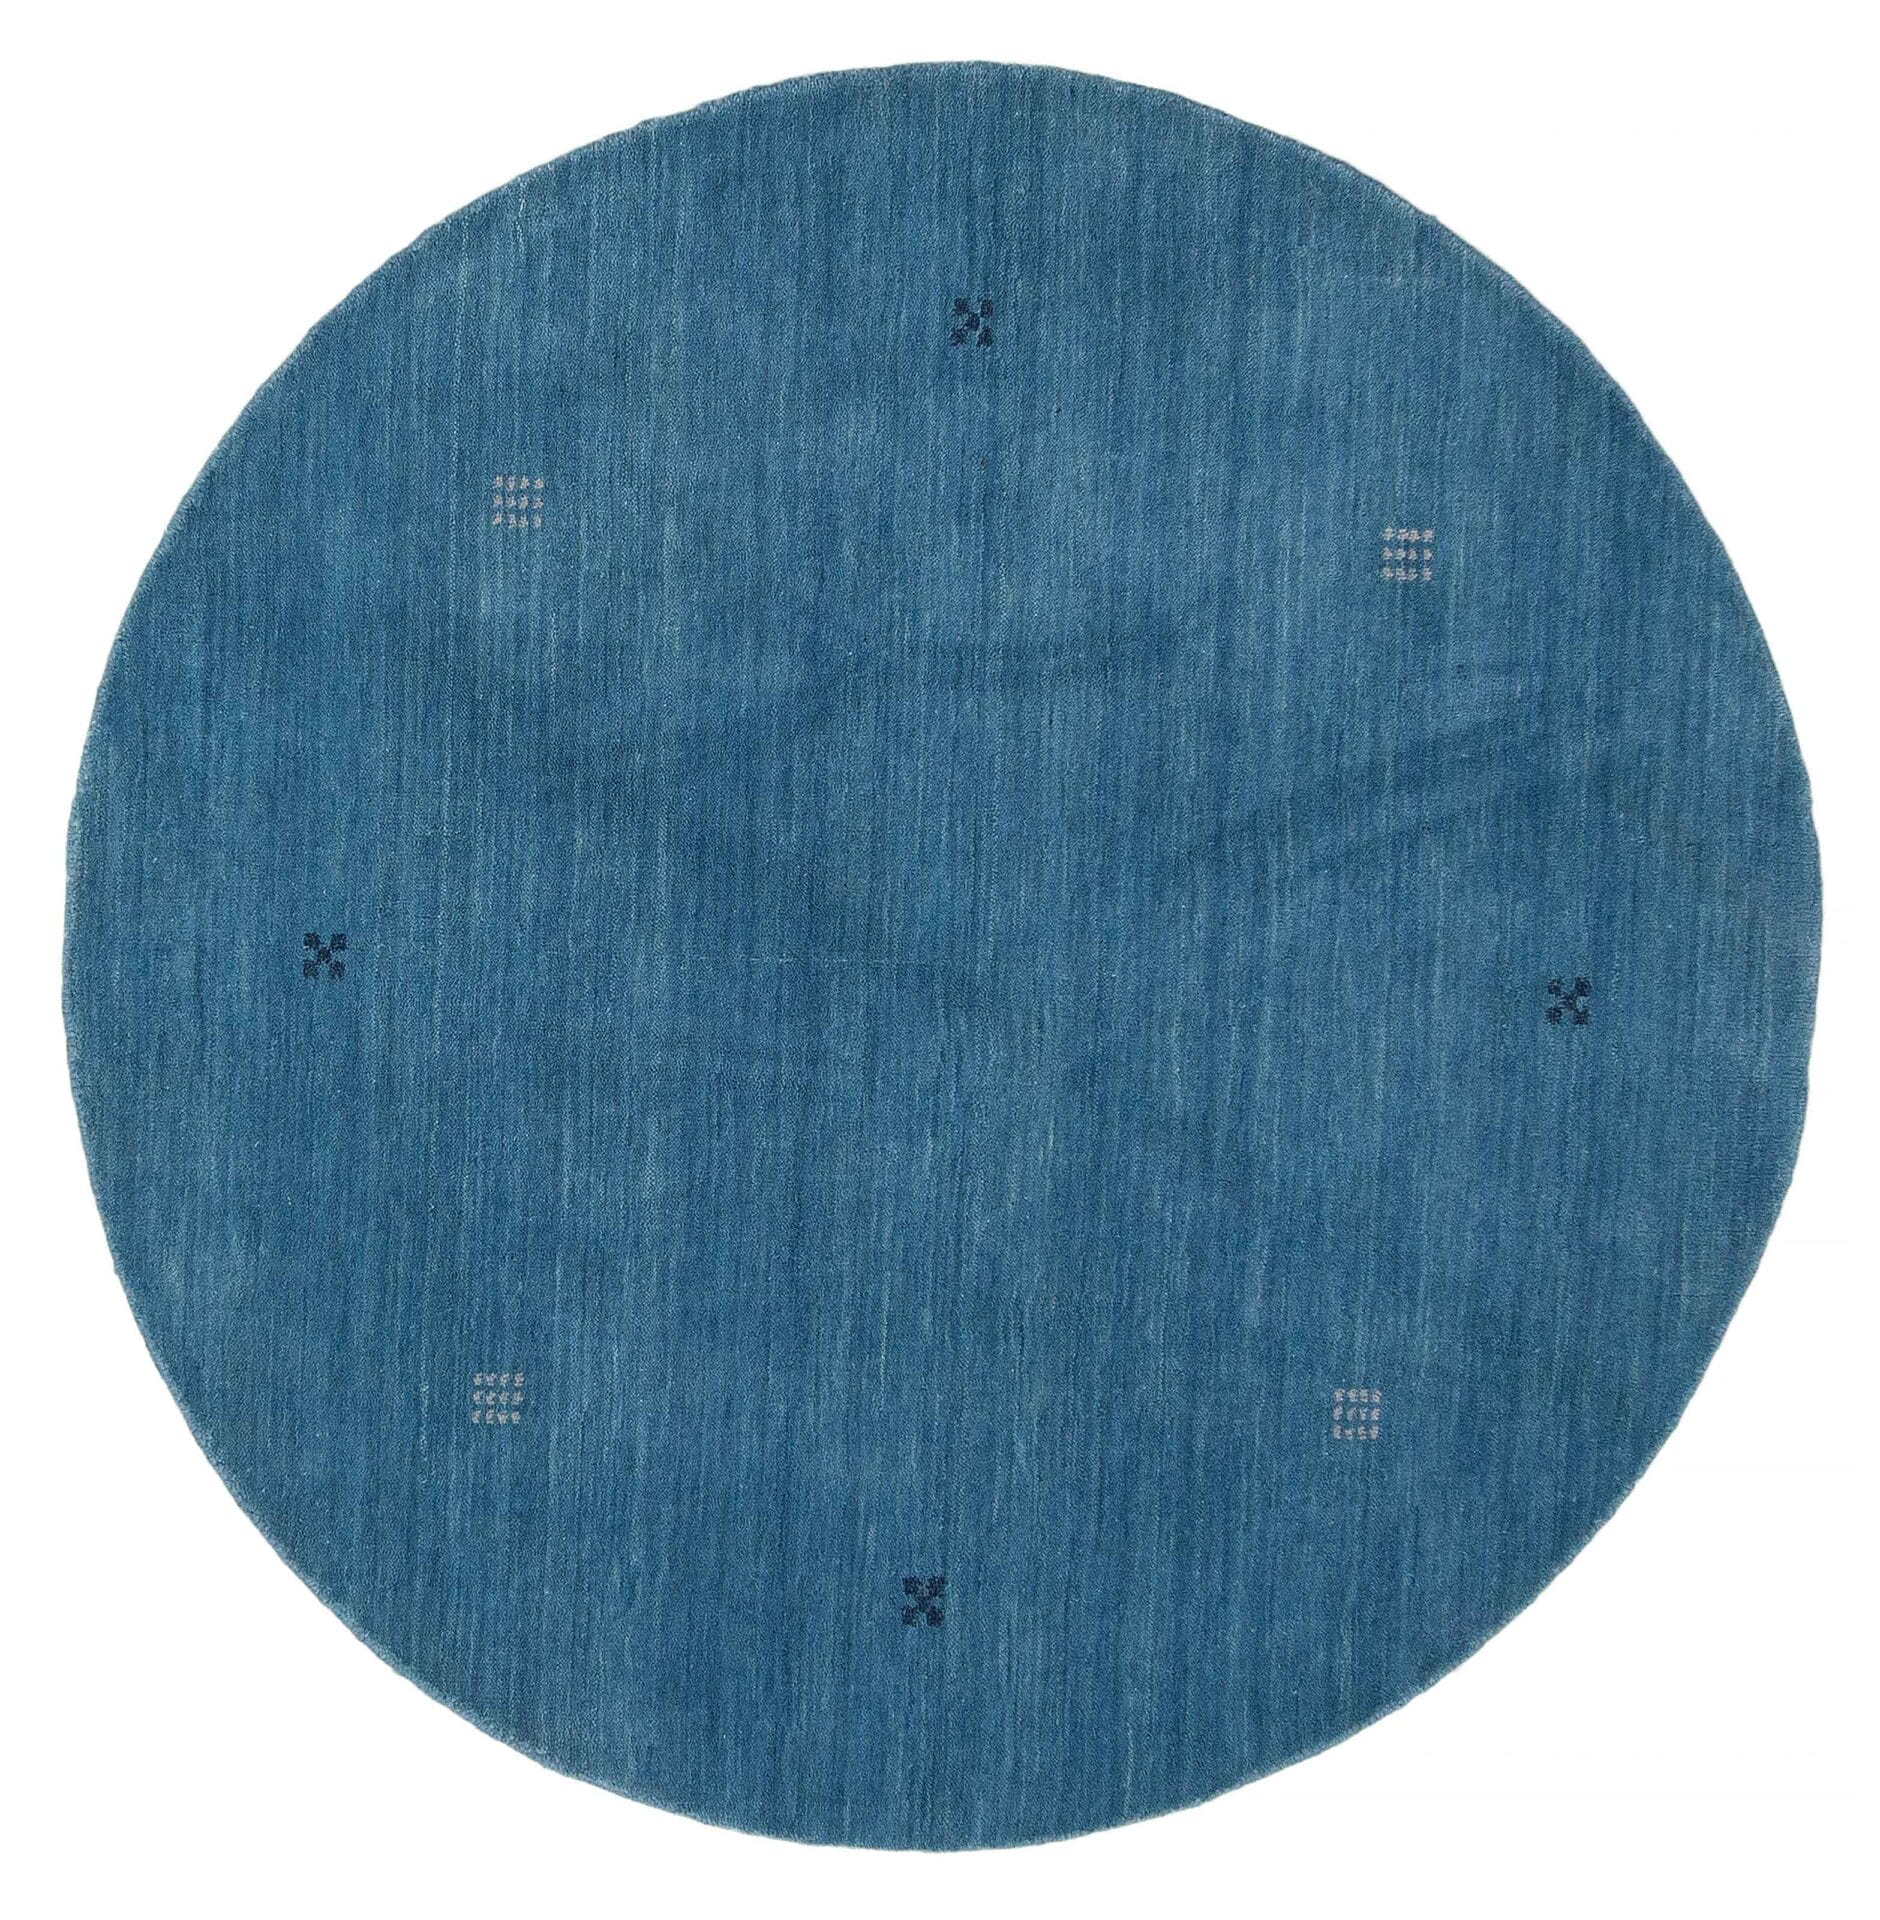 Beschrijving: Een blauw vloerkleed met vierkanten erop.